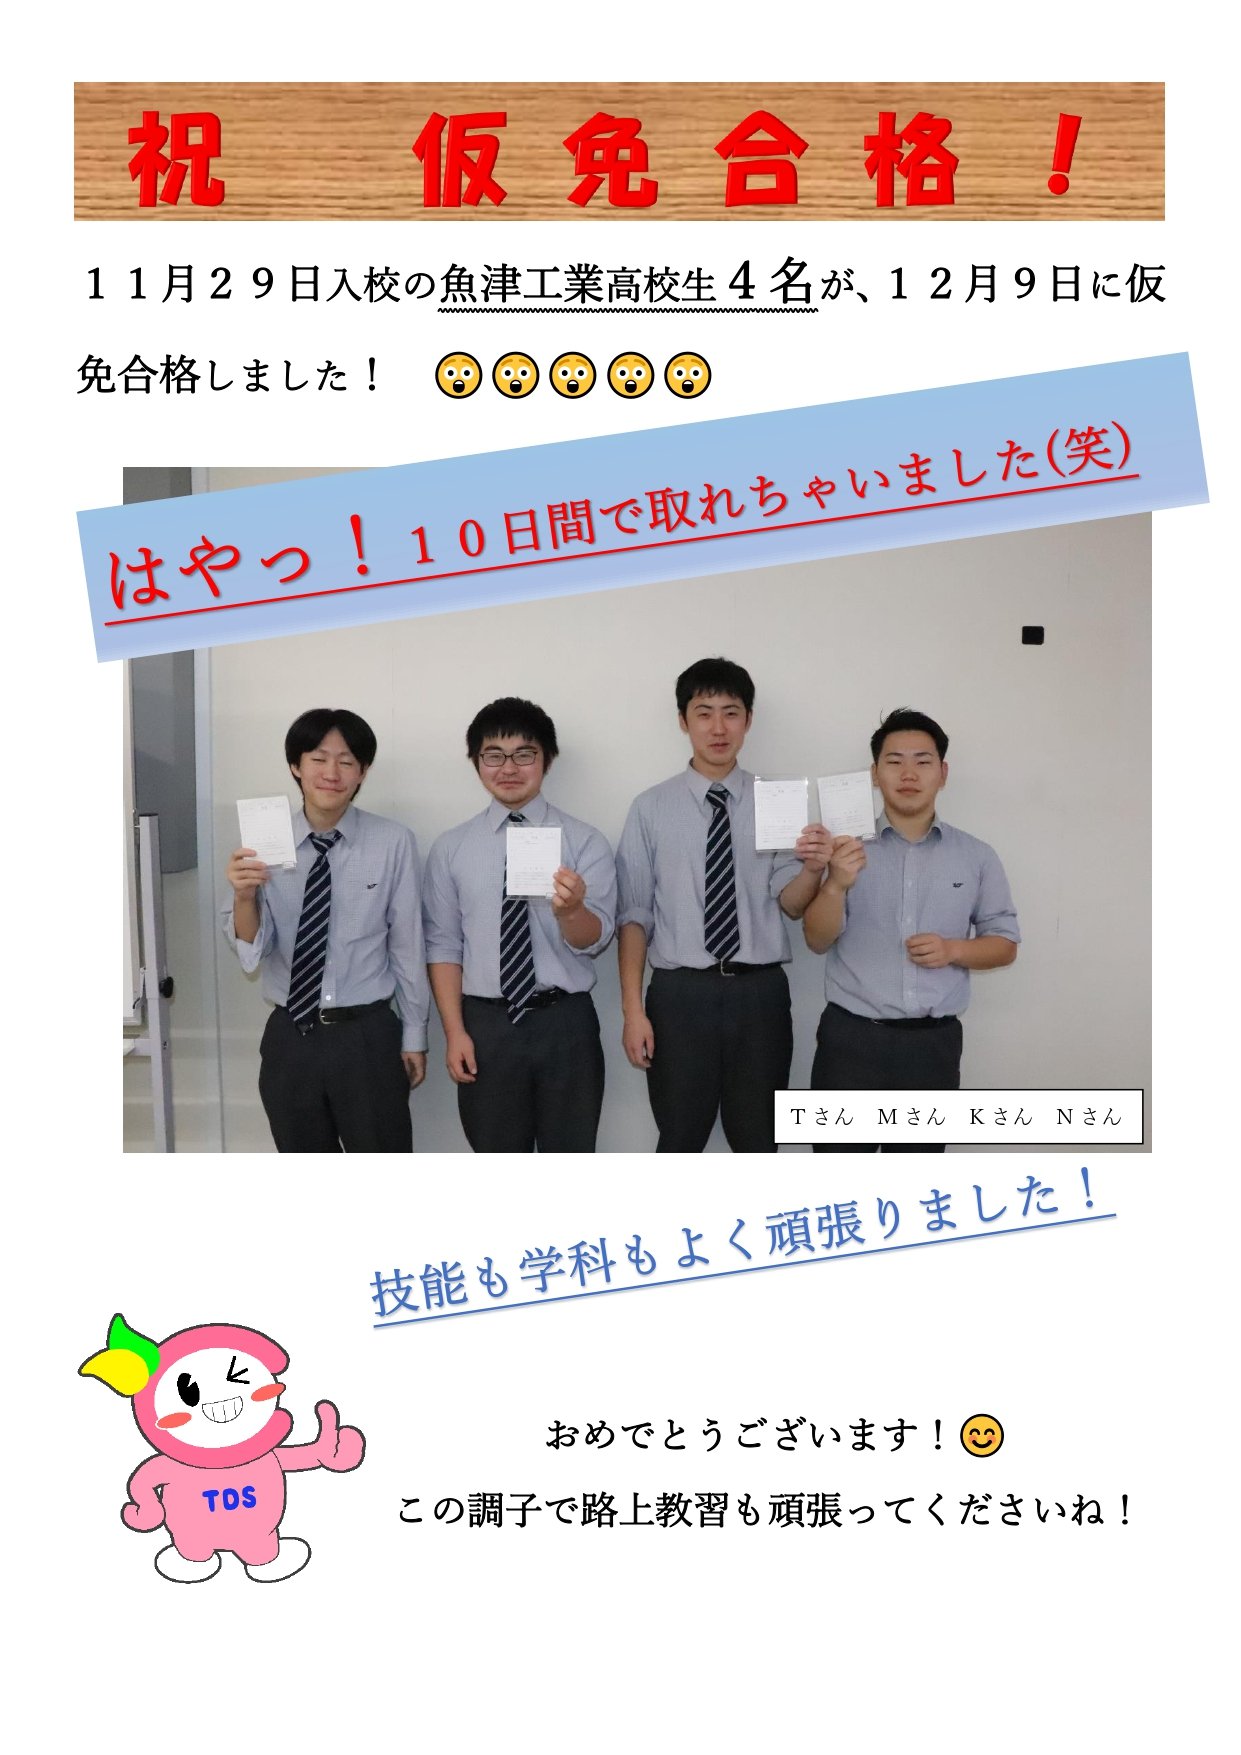 １１月２９日入校の魚津工業高校生_page-0001 (1).jpg